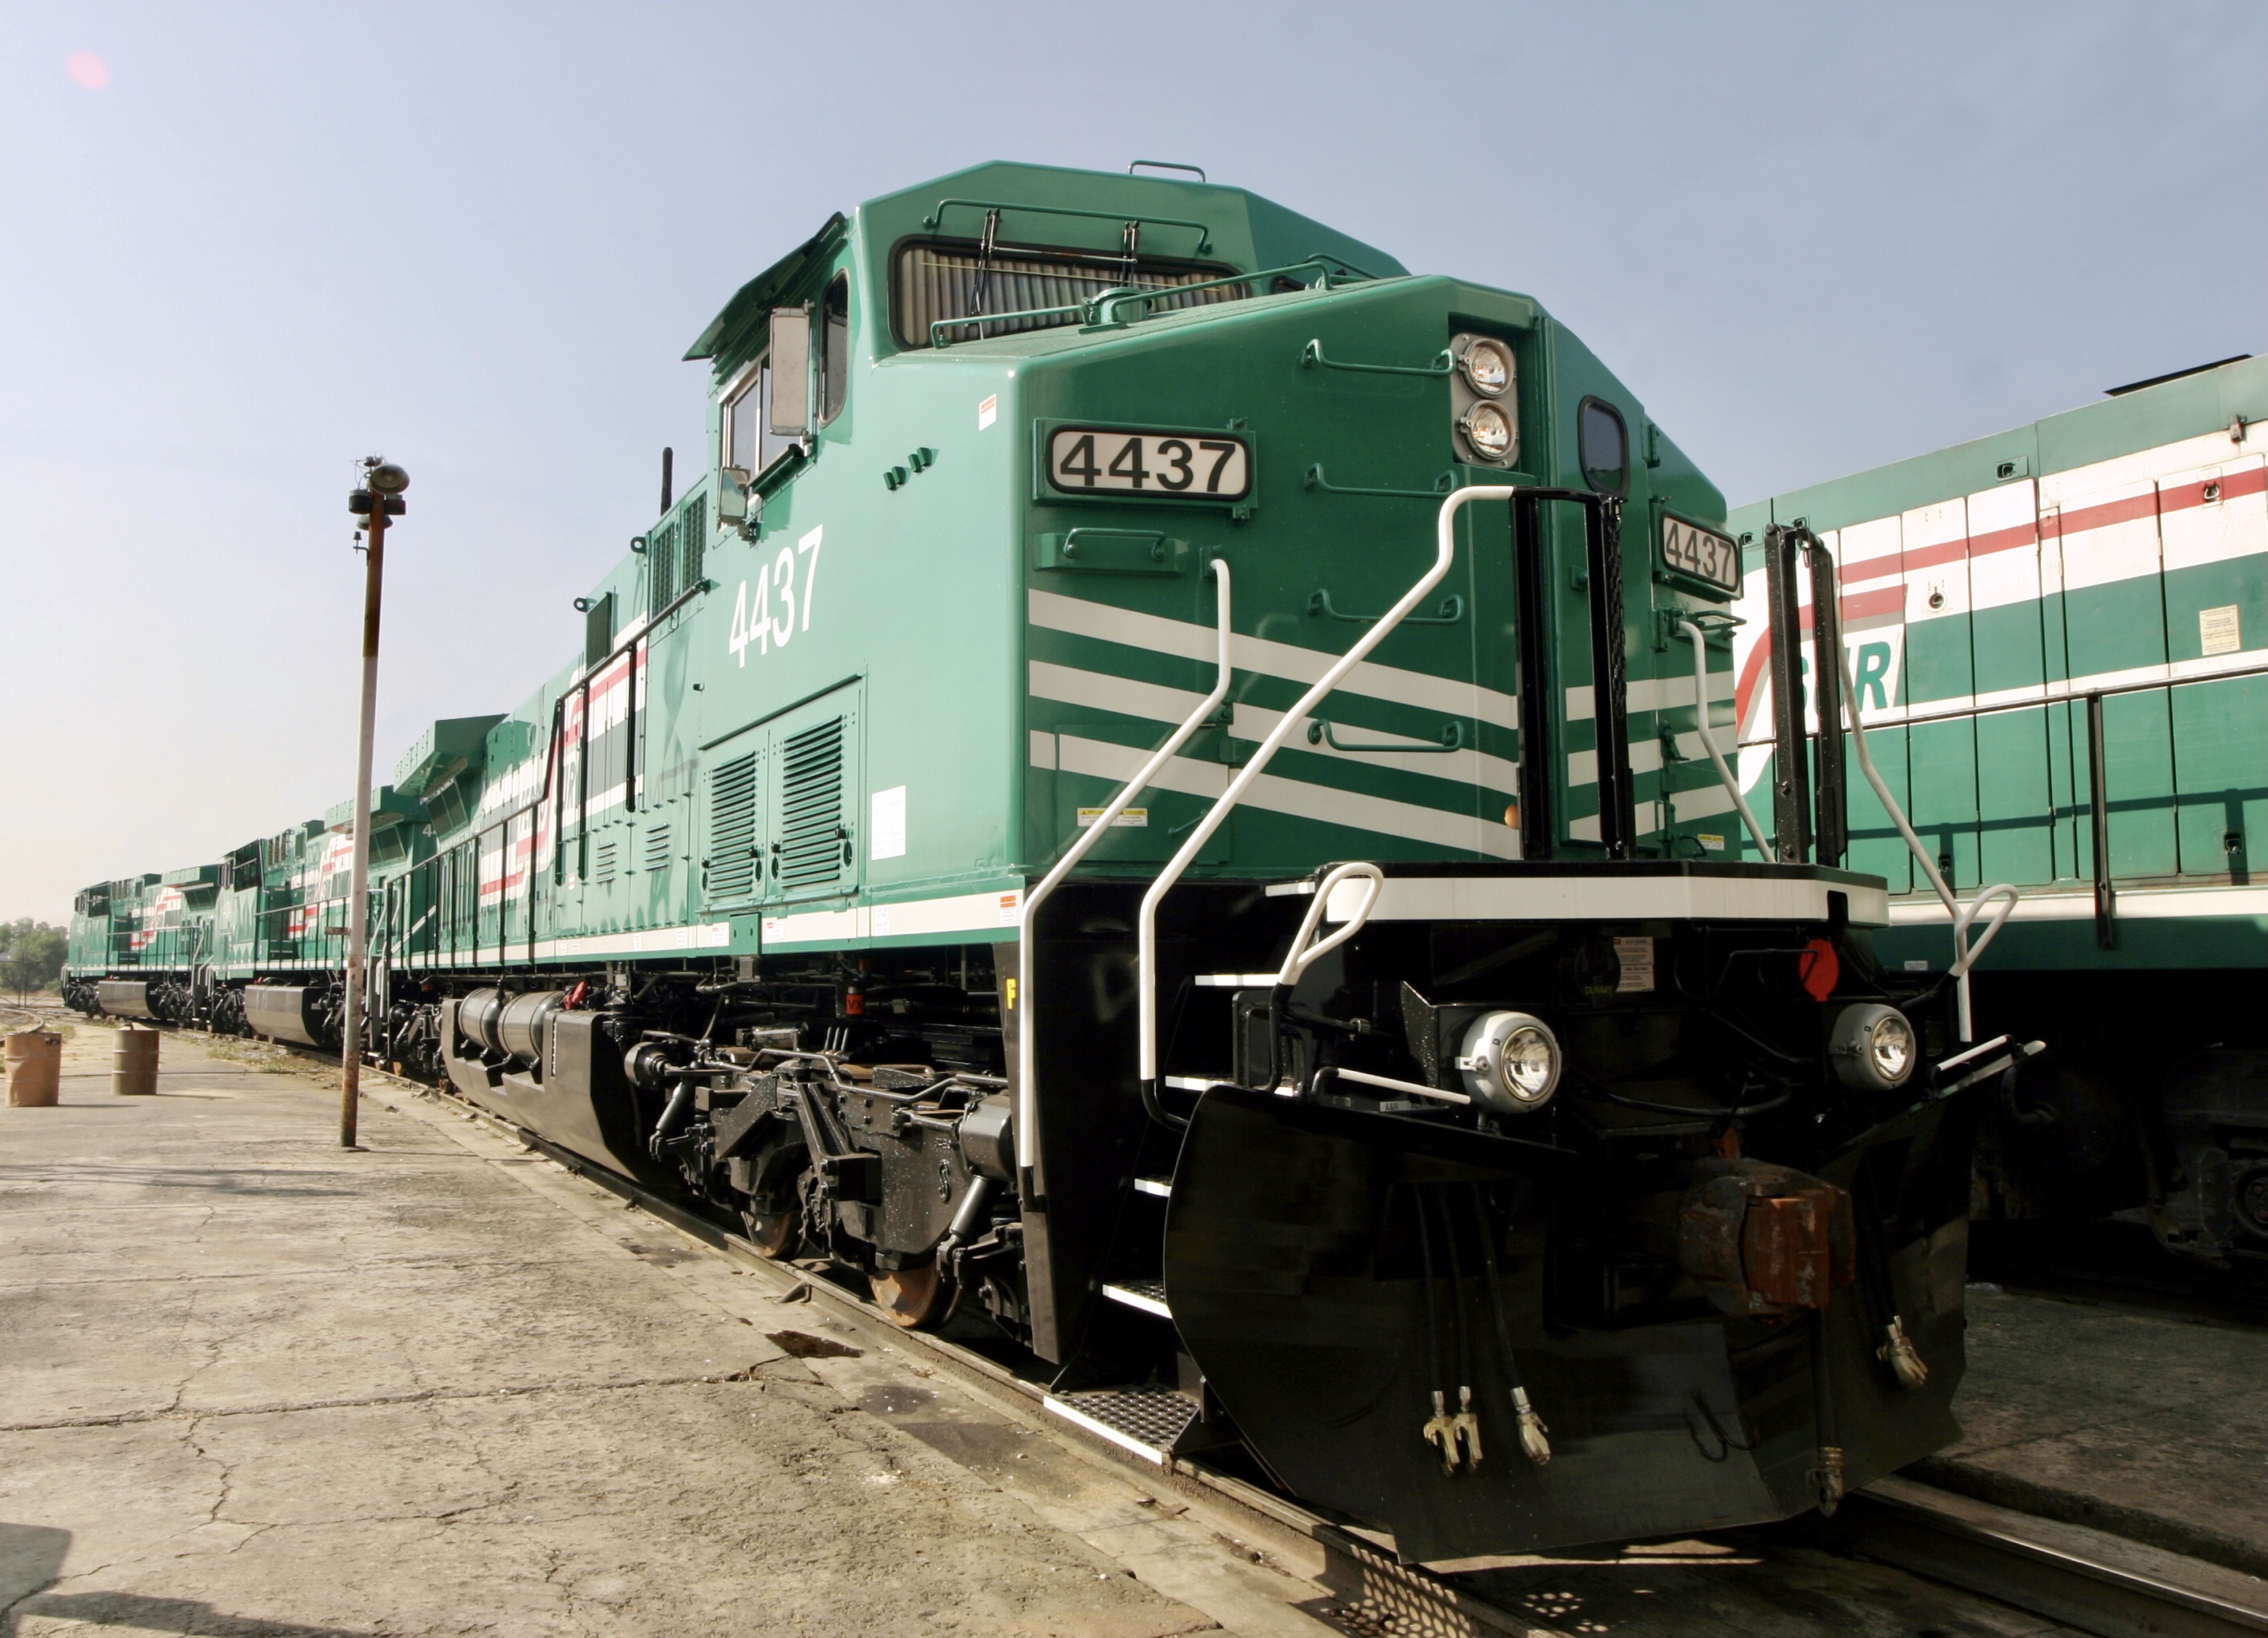 En 2020 se movilizaron por ferrocarril en México 86 mil 223 millones de toneladas-kilómetro de carga, que respecto a 2019 representa una disminución de 3.17 por ciento. Dicho decremento destaca el desempeño prudente del servicio ferroviario de carga y su 